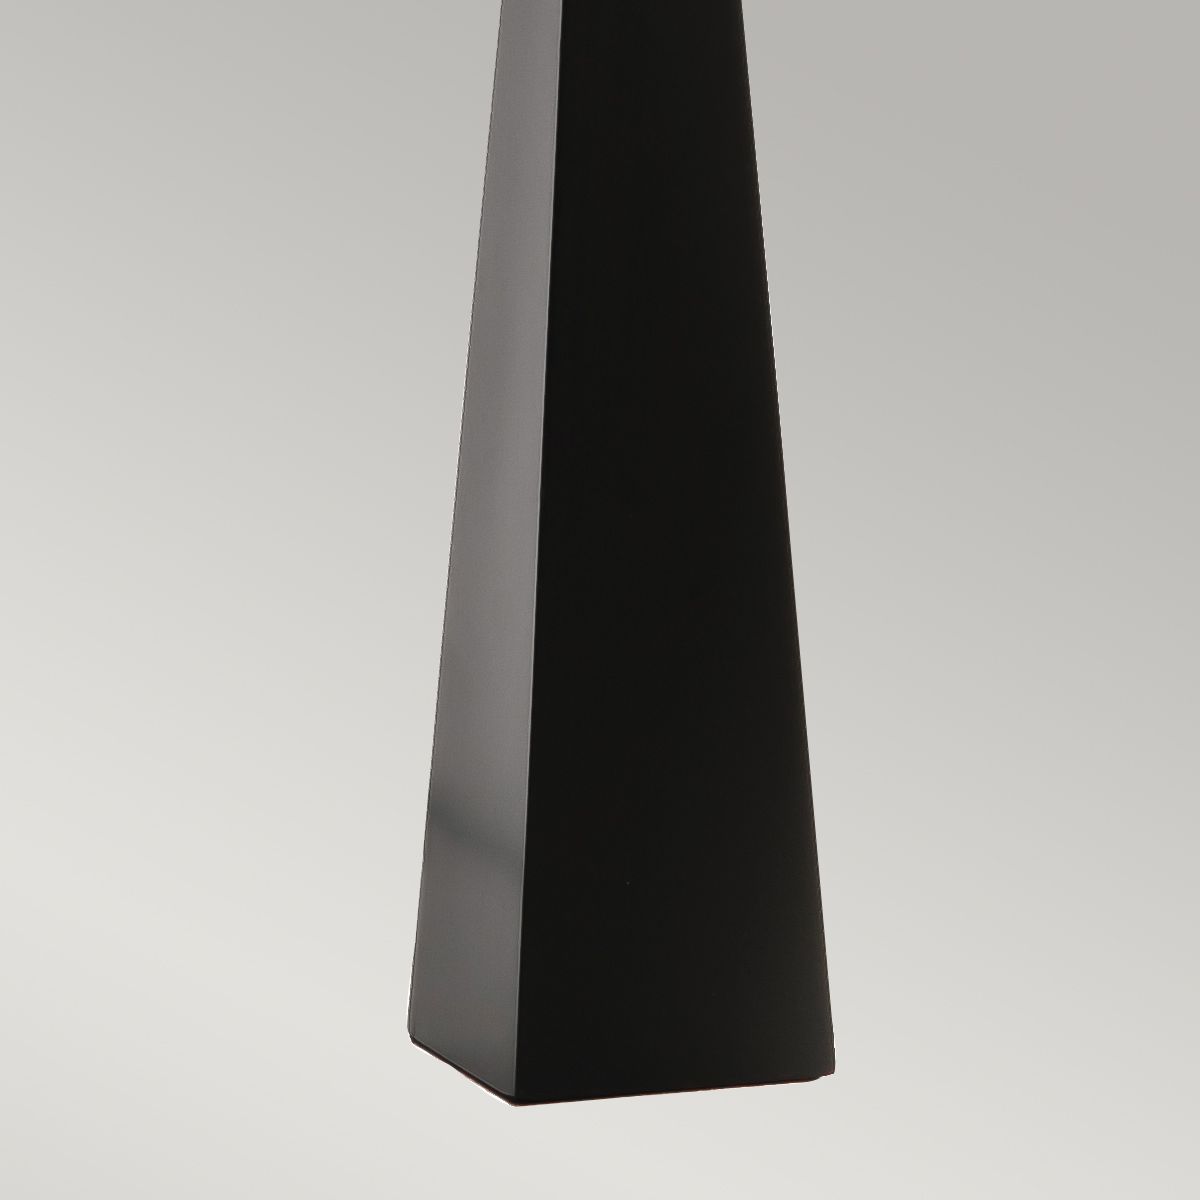 Tischlampe groß 79 cm hoch Schwarz Weiß Stoff Metall E27